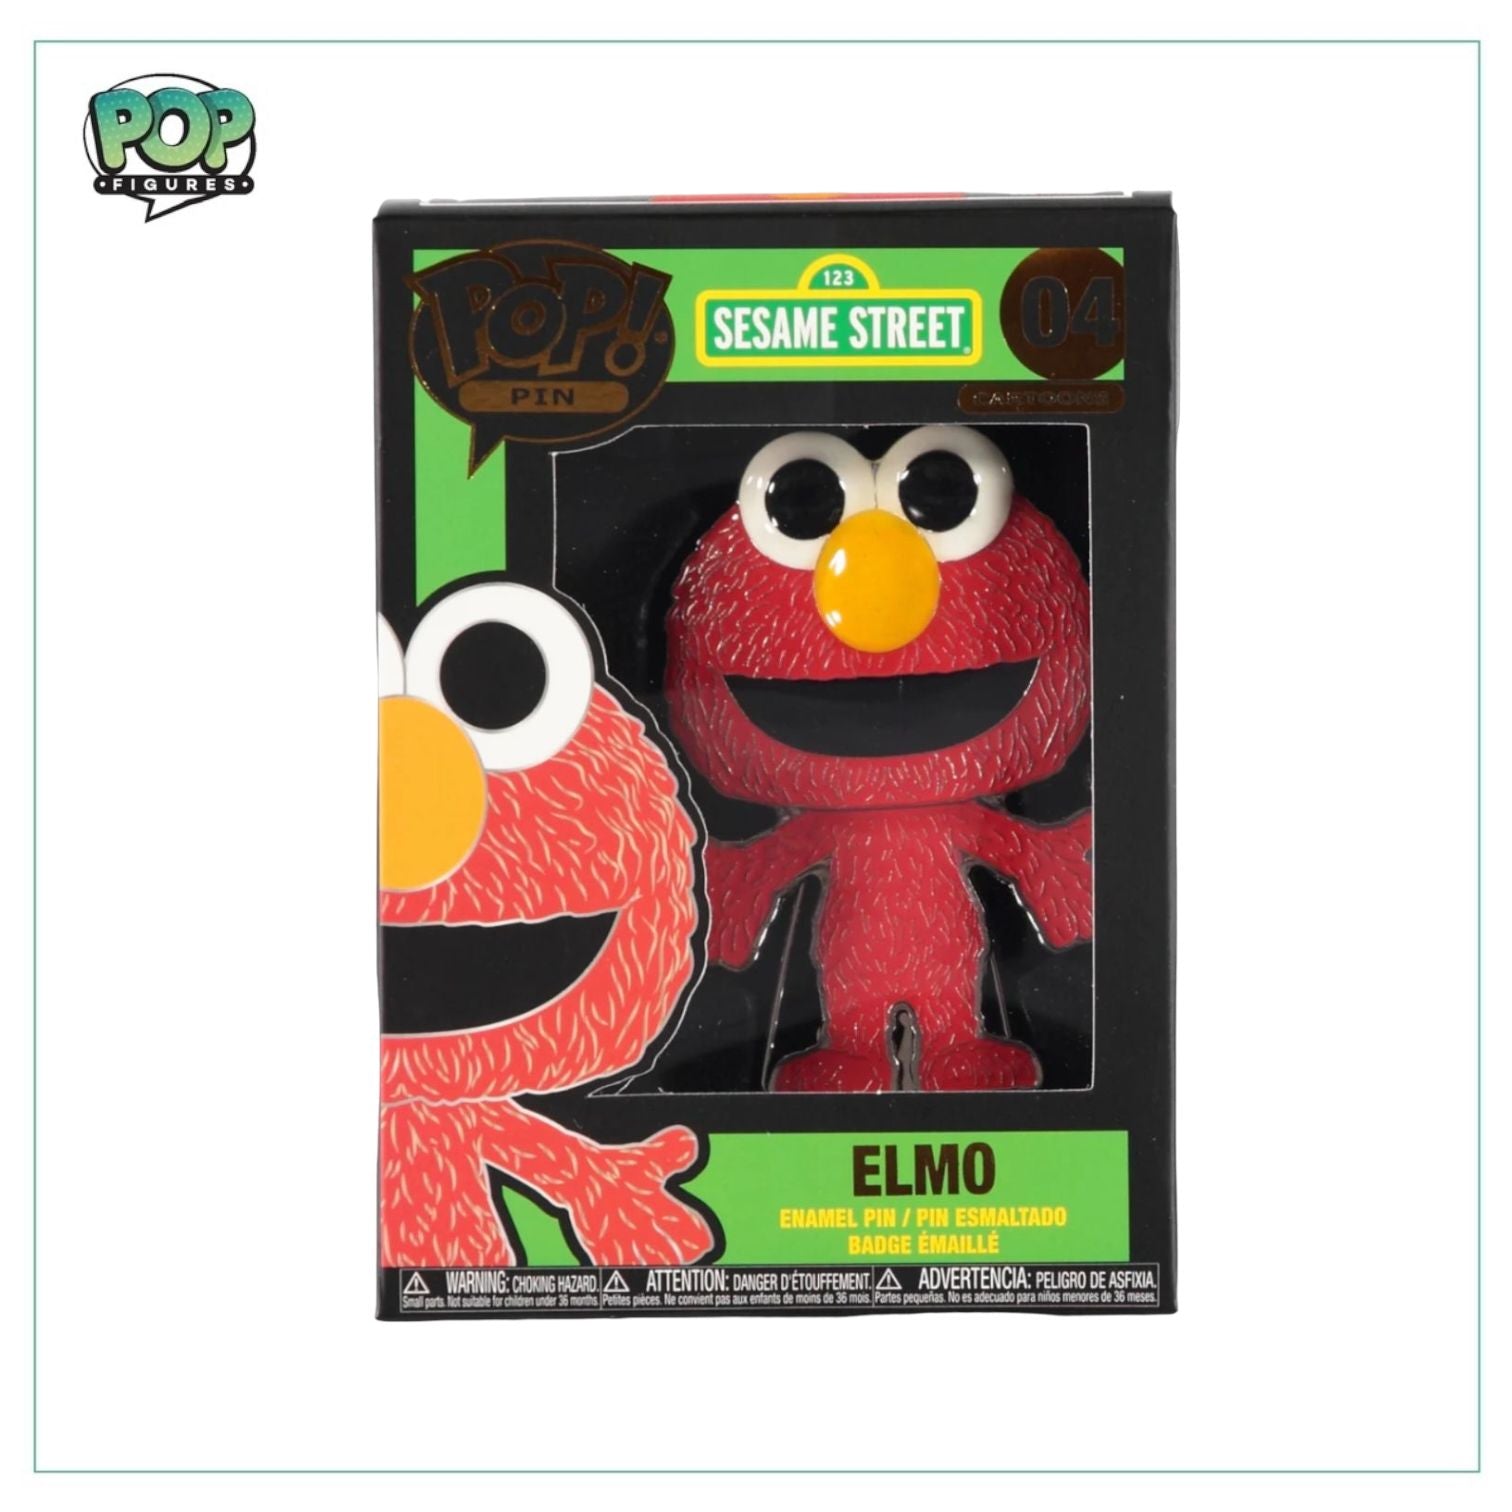 Elmo #04 Funko Enamel Pin! - Sesame Street